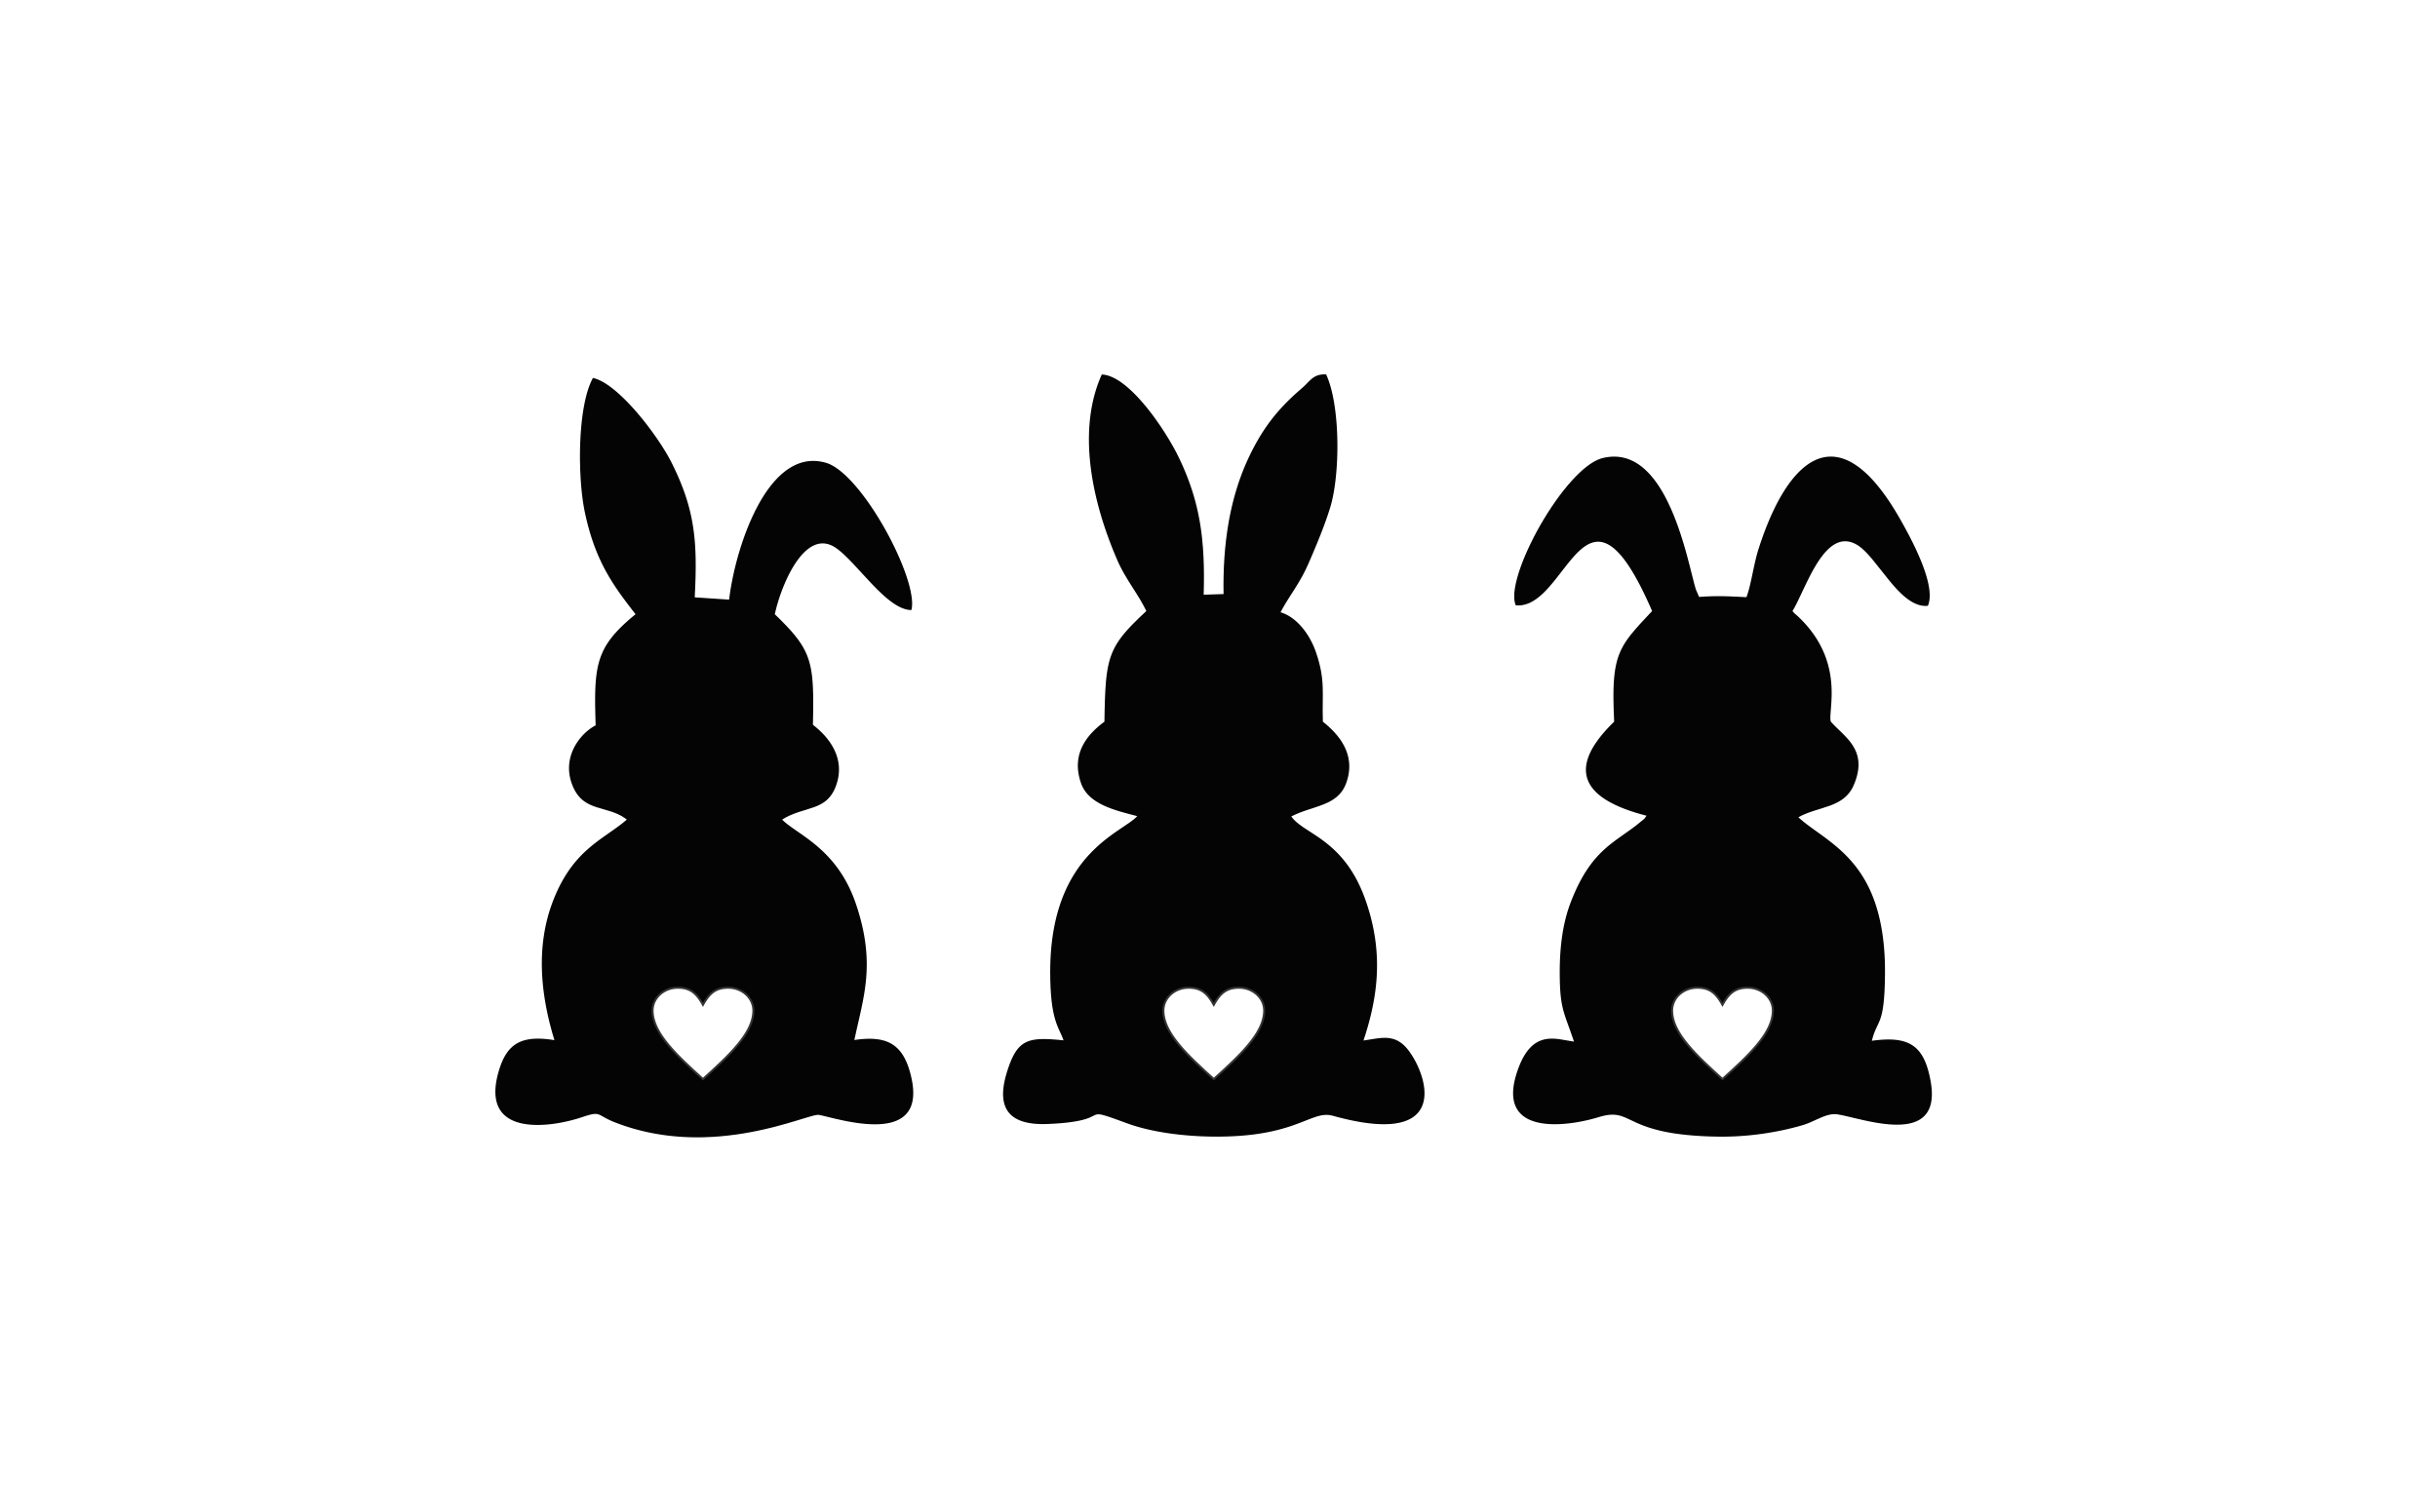 Easter Bunnies SVG, LoveBunny, Happy Easter SVG, Easter SVG, Cute